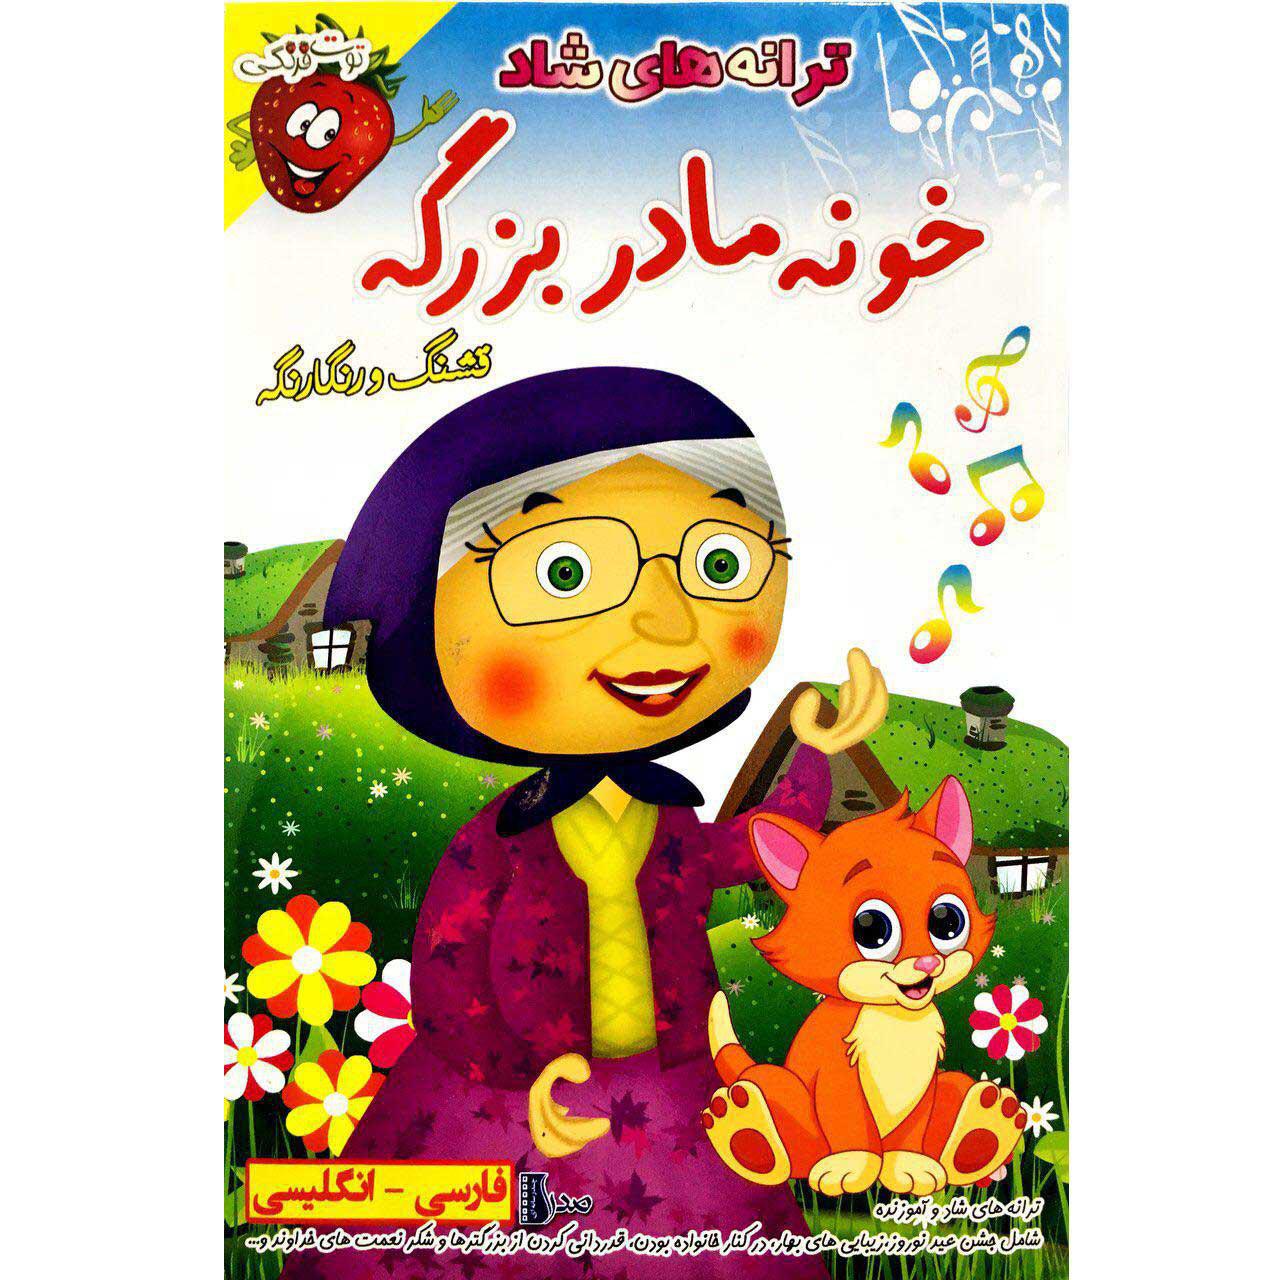 ترانه های شاد خونه مادربزرگه به فارسی و انگلیسی